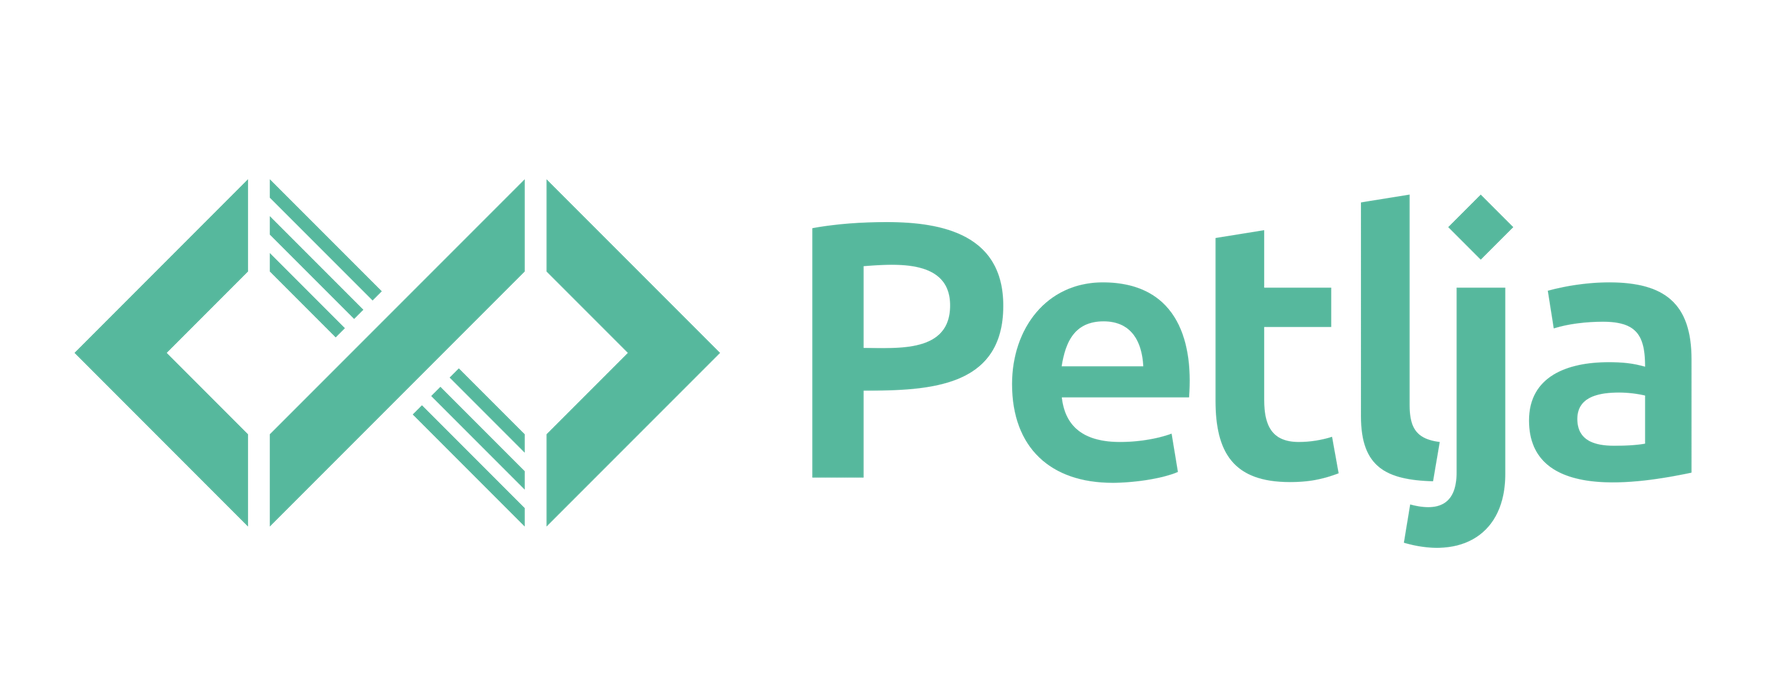 Petlja_zvanicni_logo.png